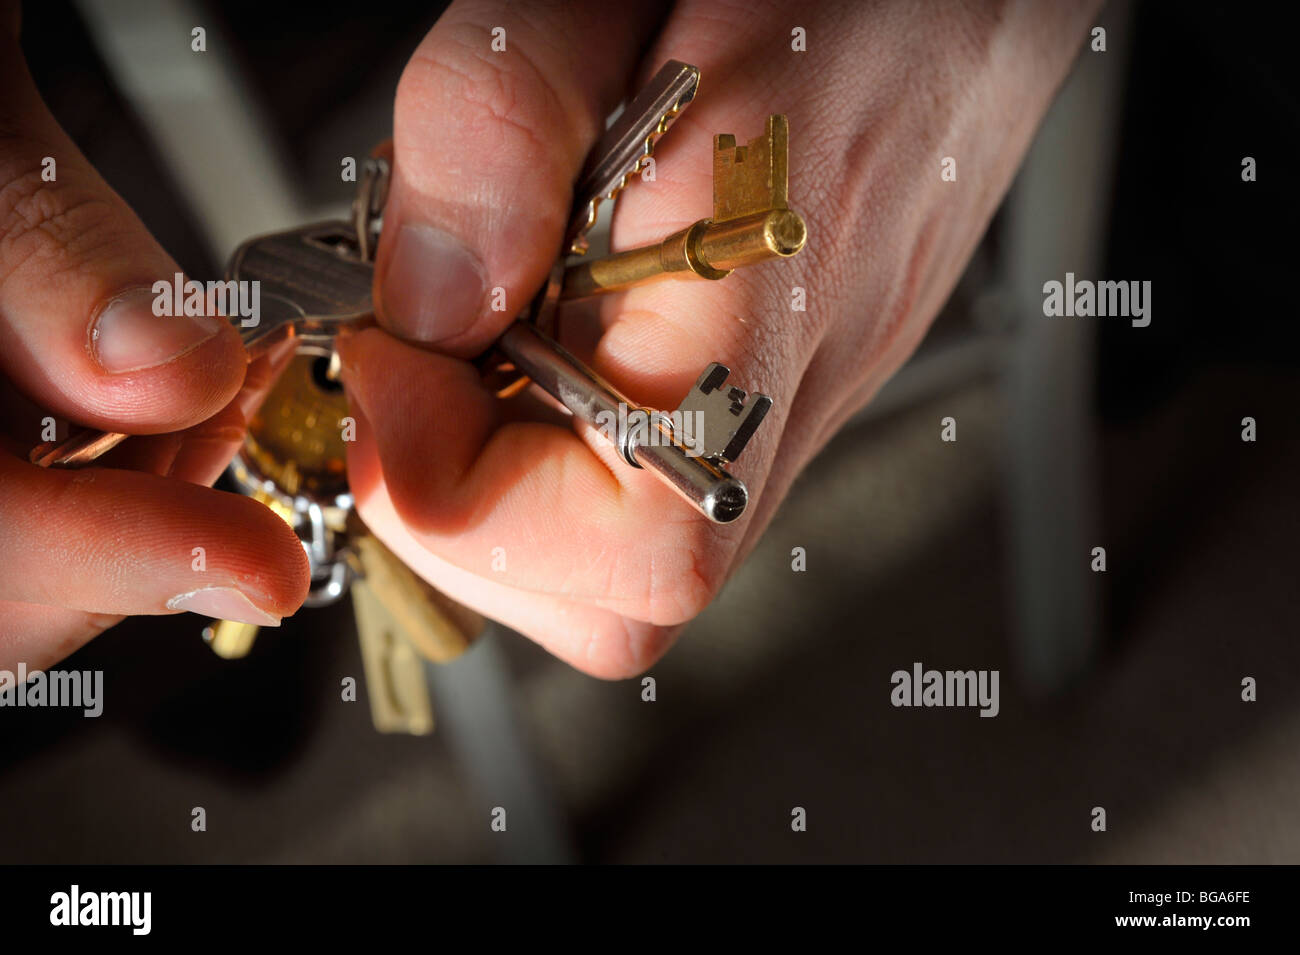 Seguridad en el hogar: un manojo de llaves en manos del hombre. Imagen Jim Holden. Foto de stock